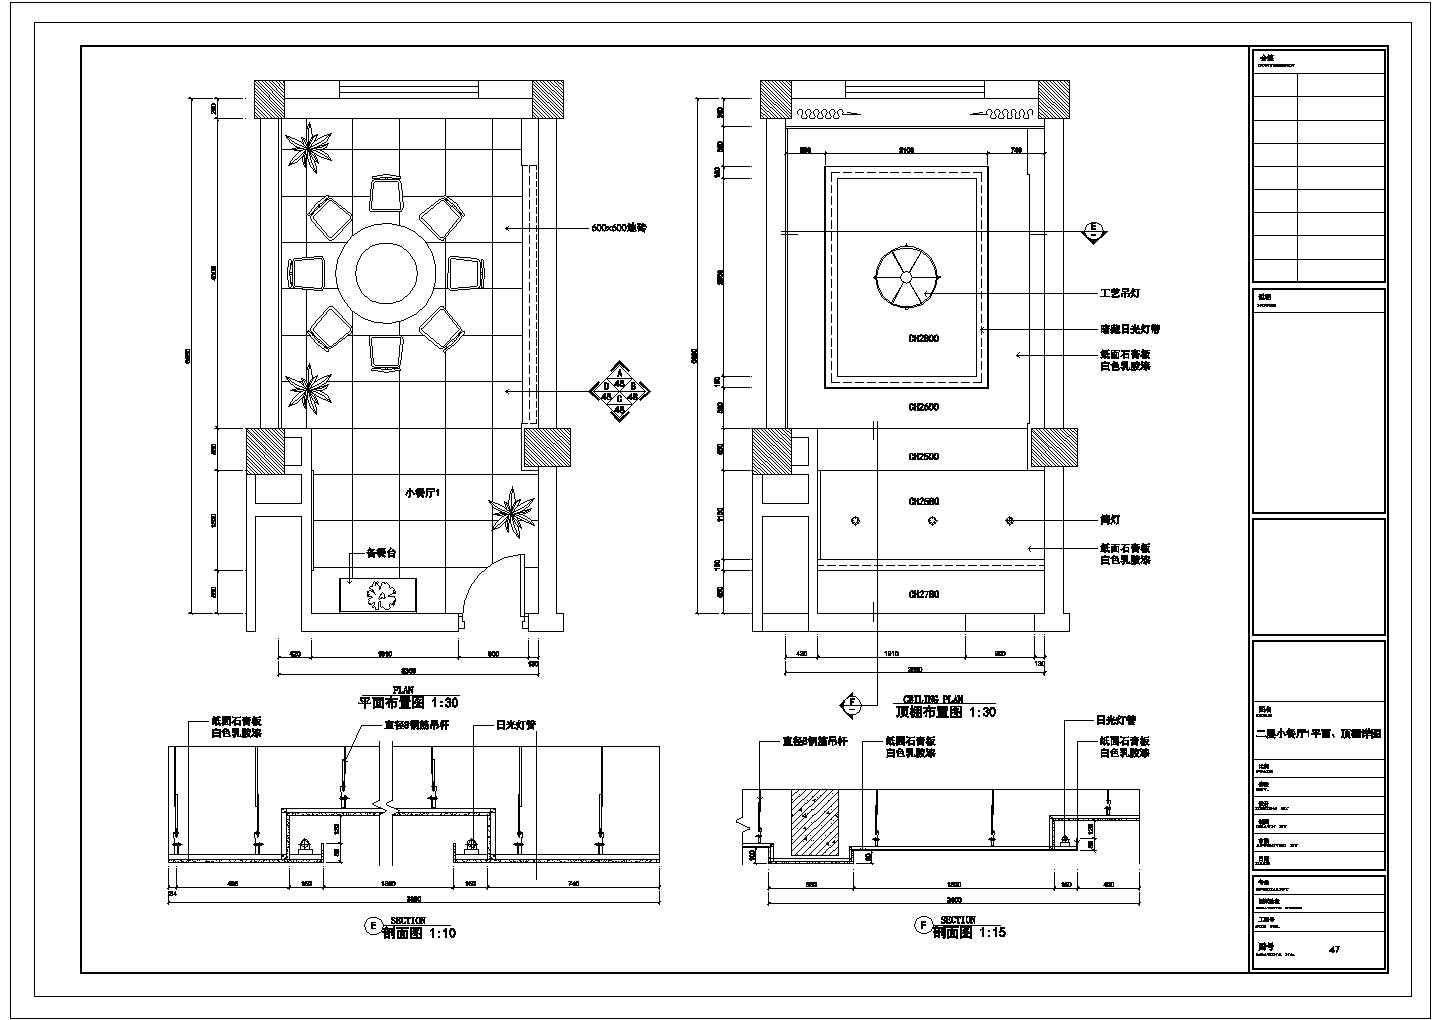 某五星级宾馆装饰CAD室内设计完整施工图